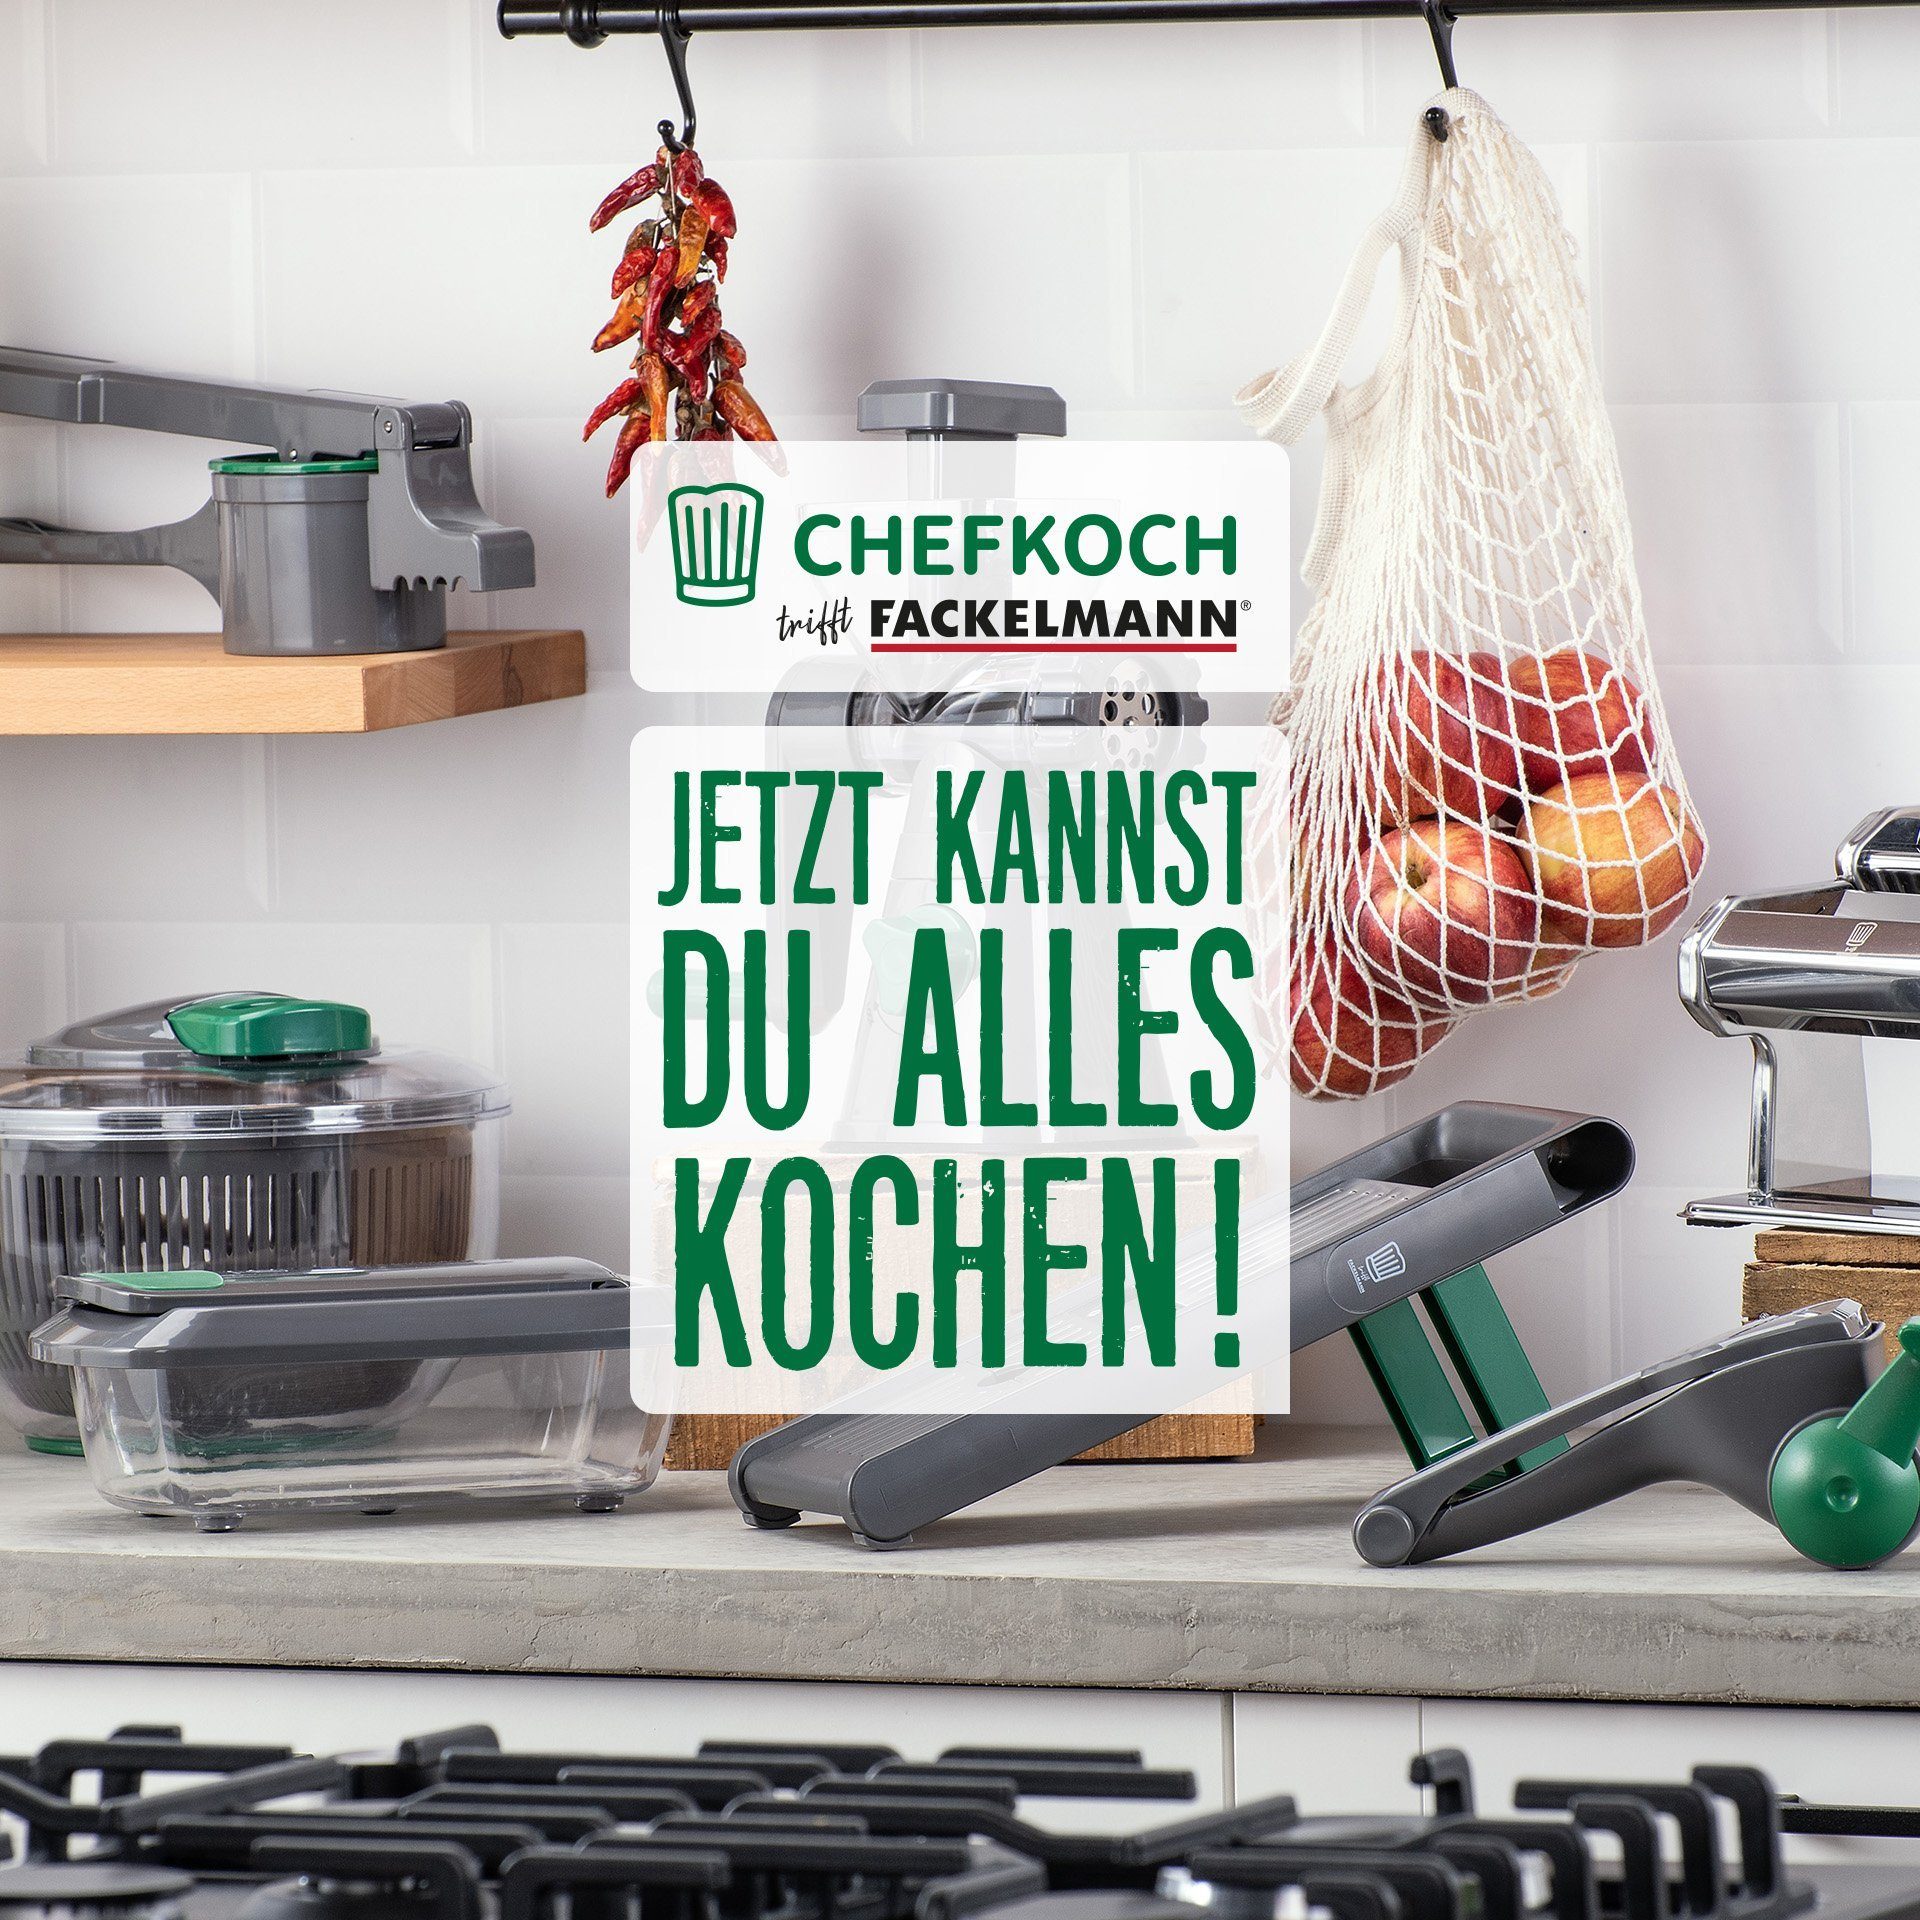 Trommelreibe Kitchenmachines Fackelmann trifft Chefkoch